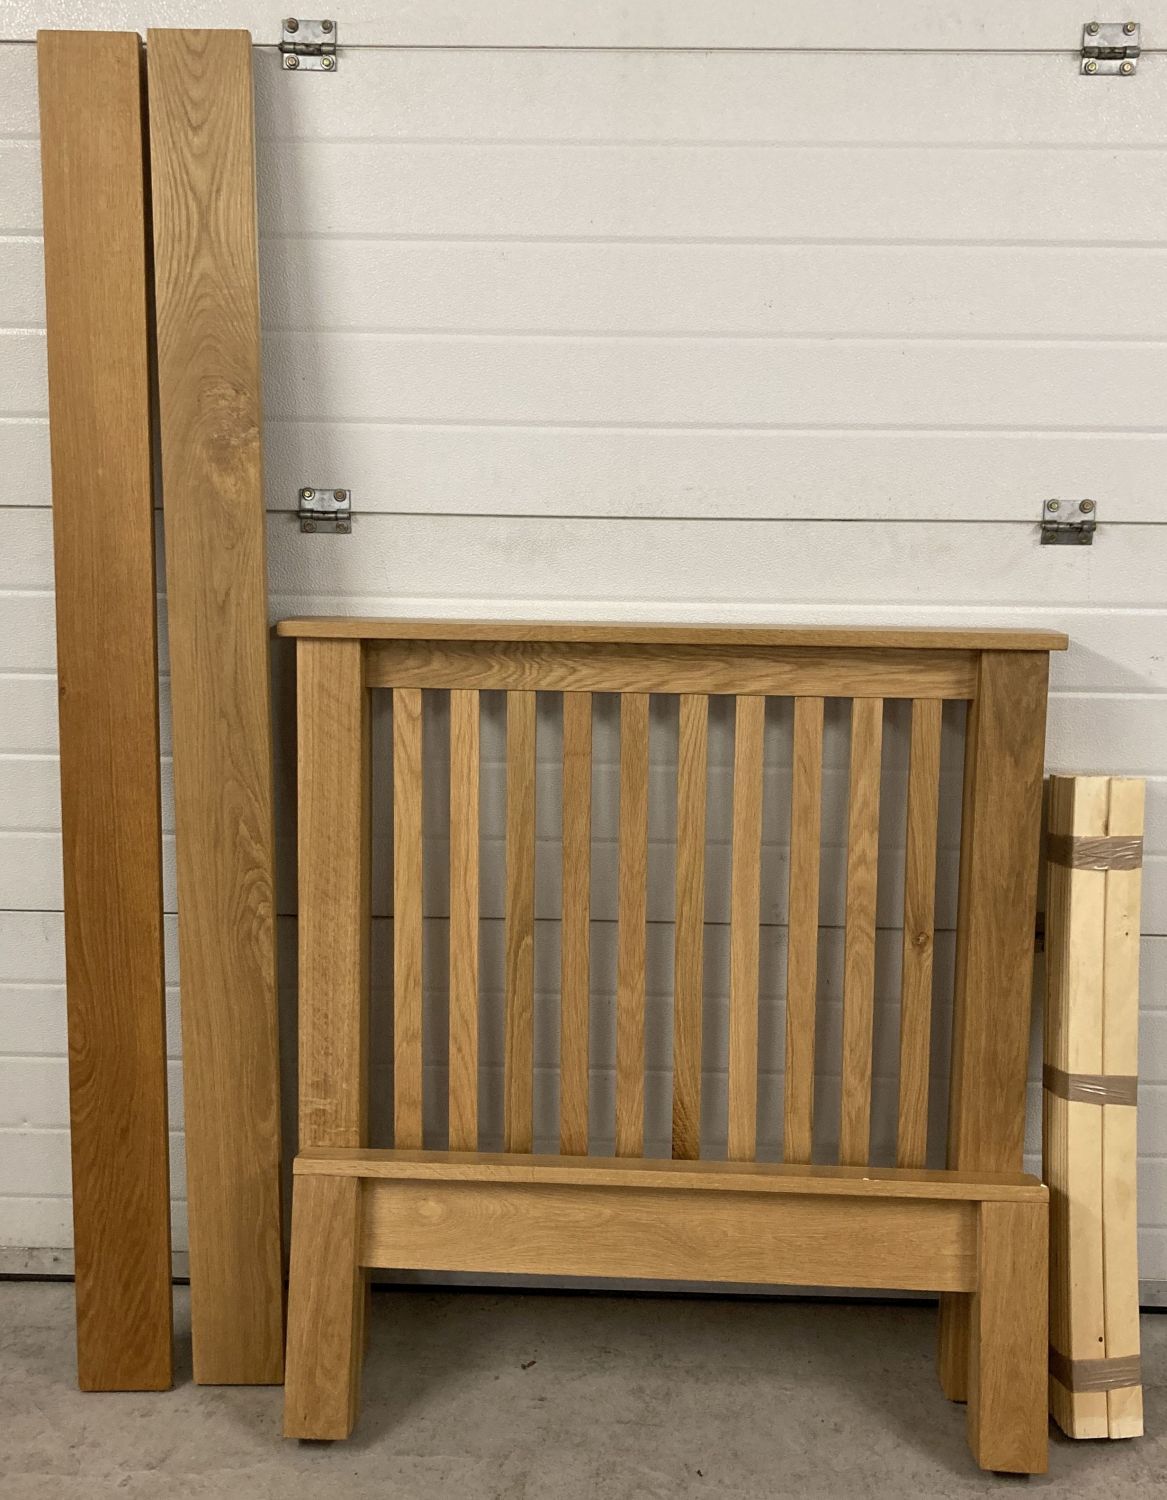 A modern design light oak solid wood single bed frame complete with wooden slats.